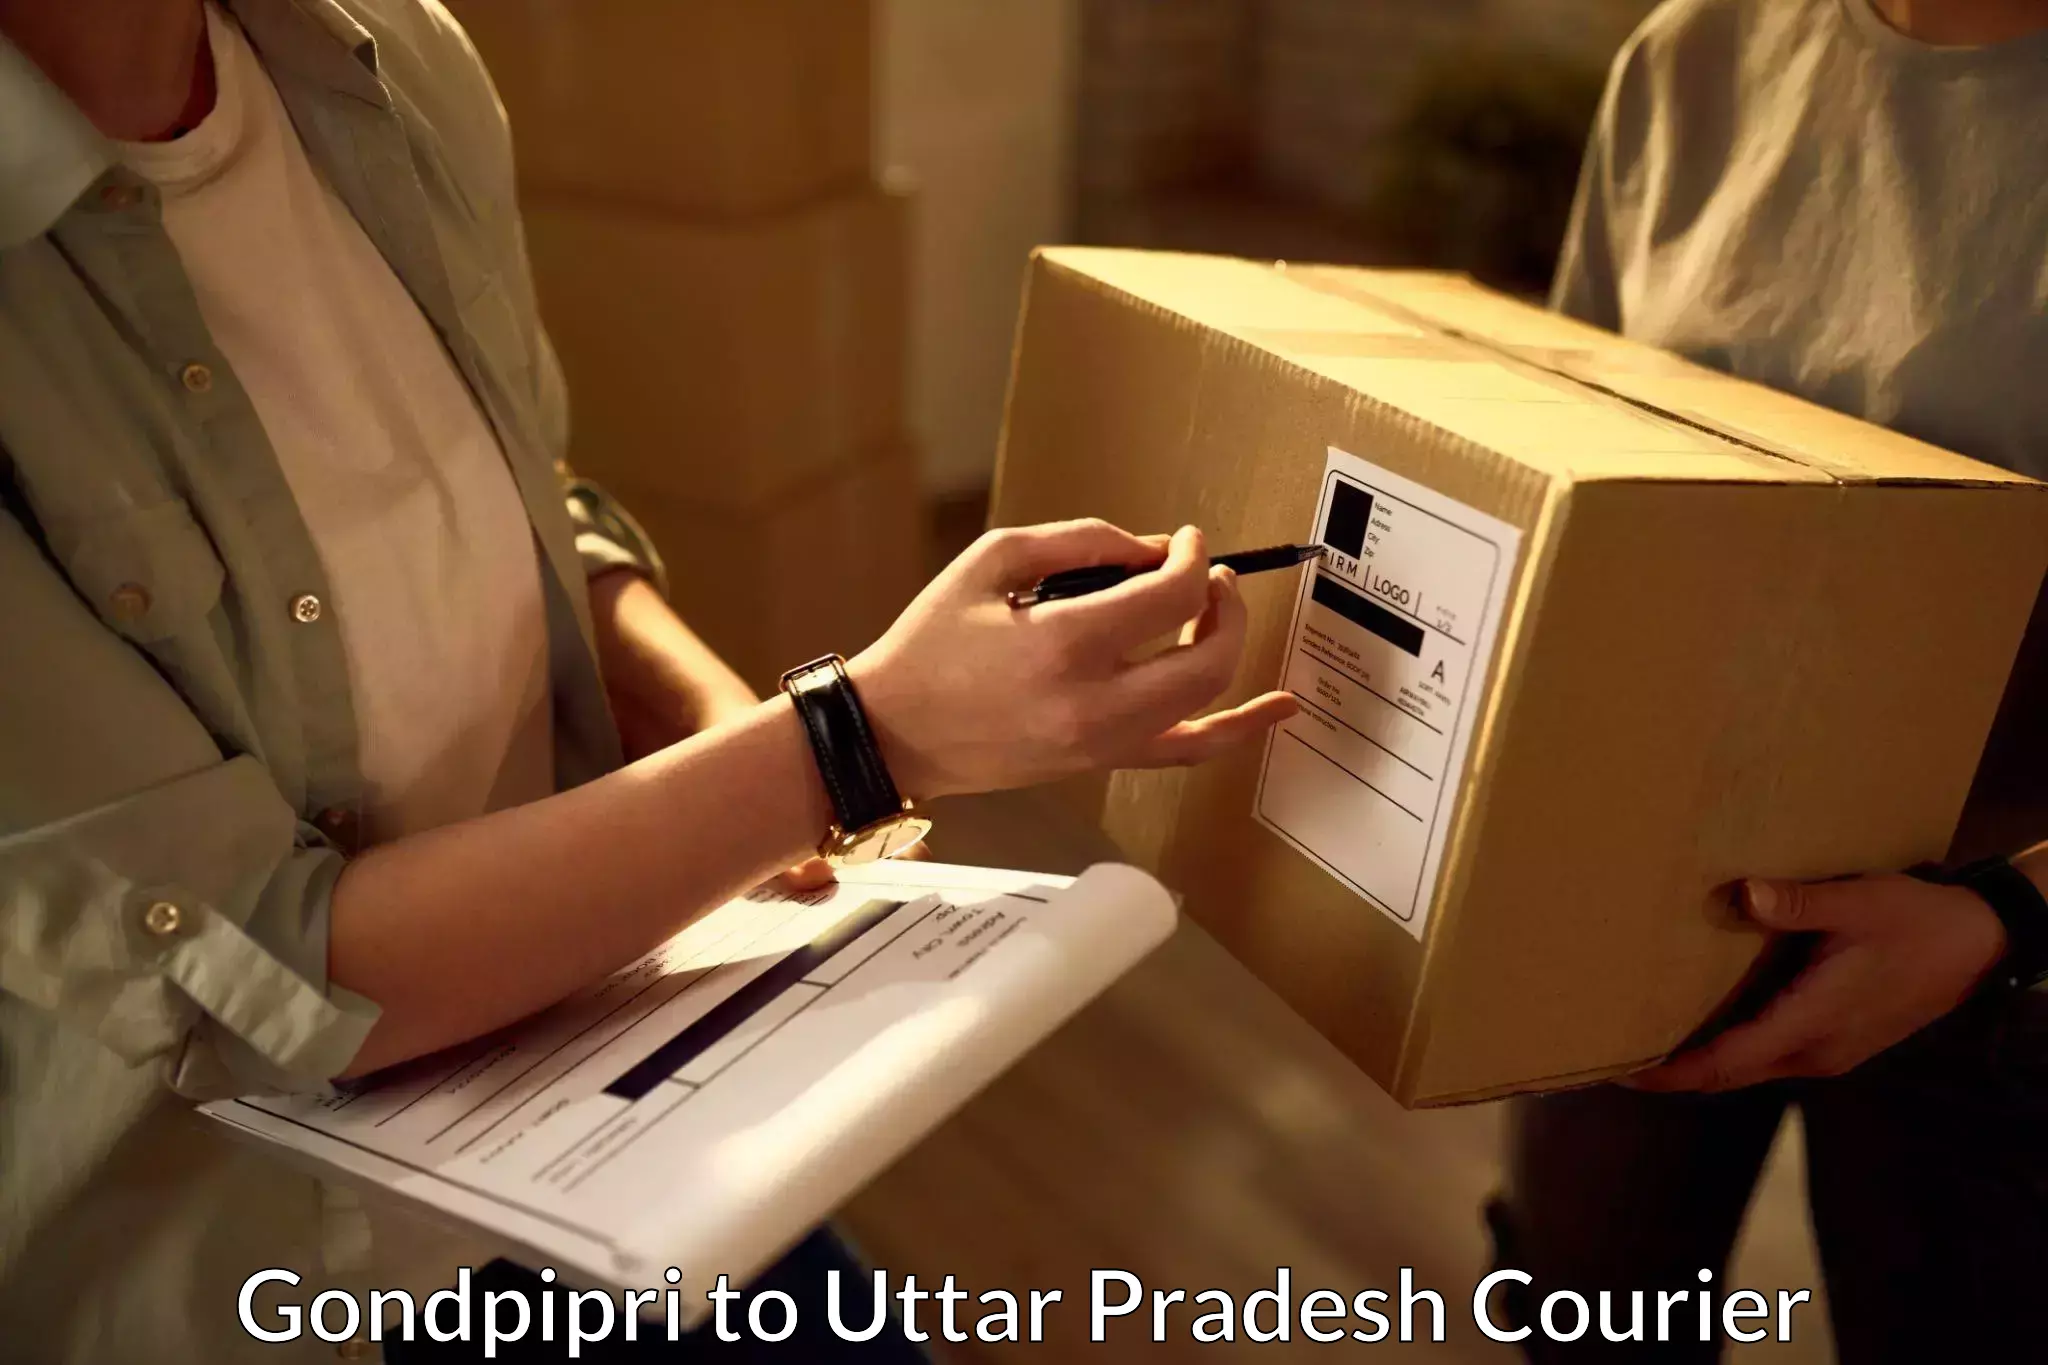 Remote area delivery Gondpipri to Uttar Pradesh